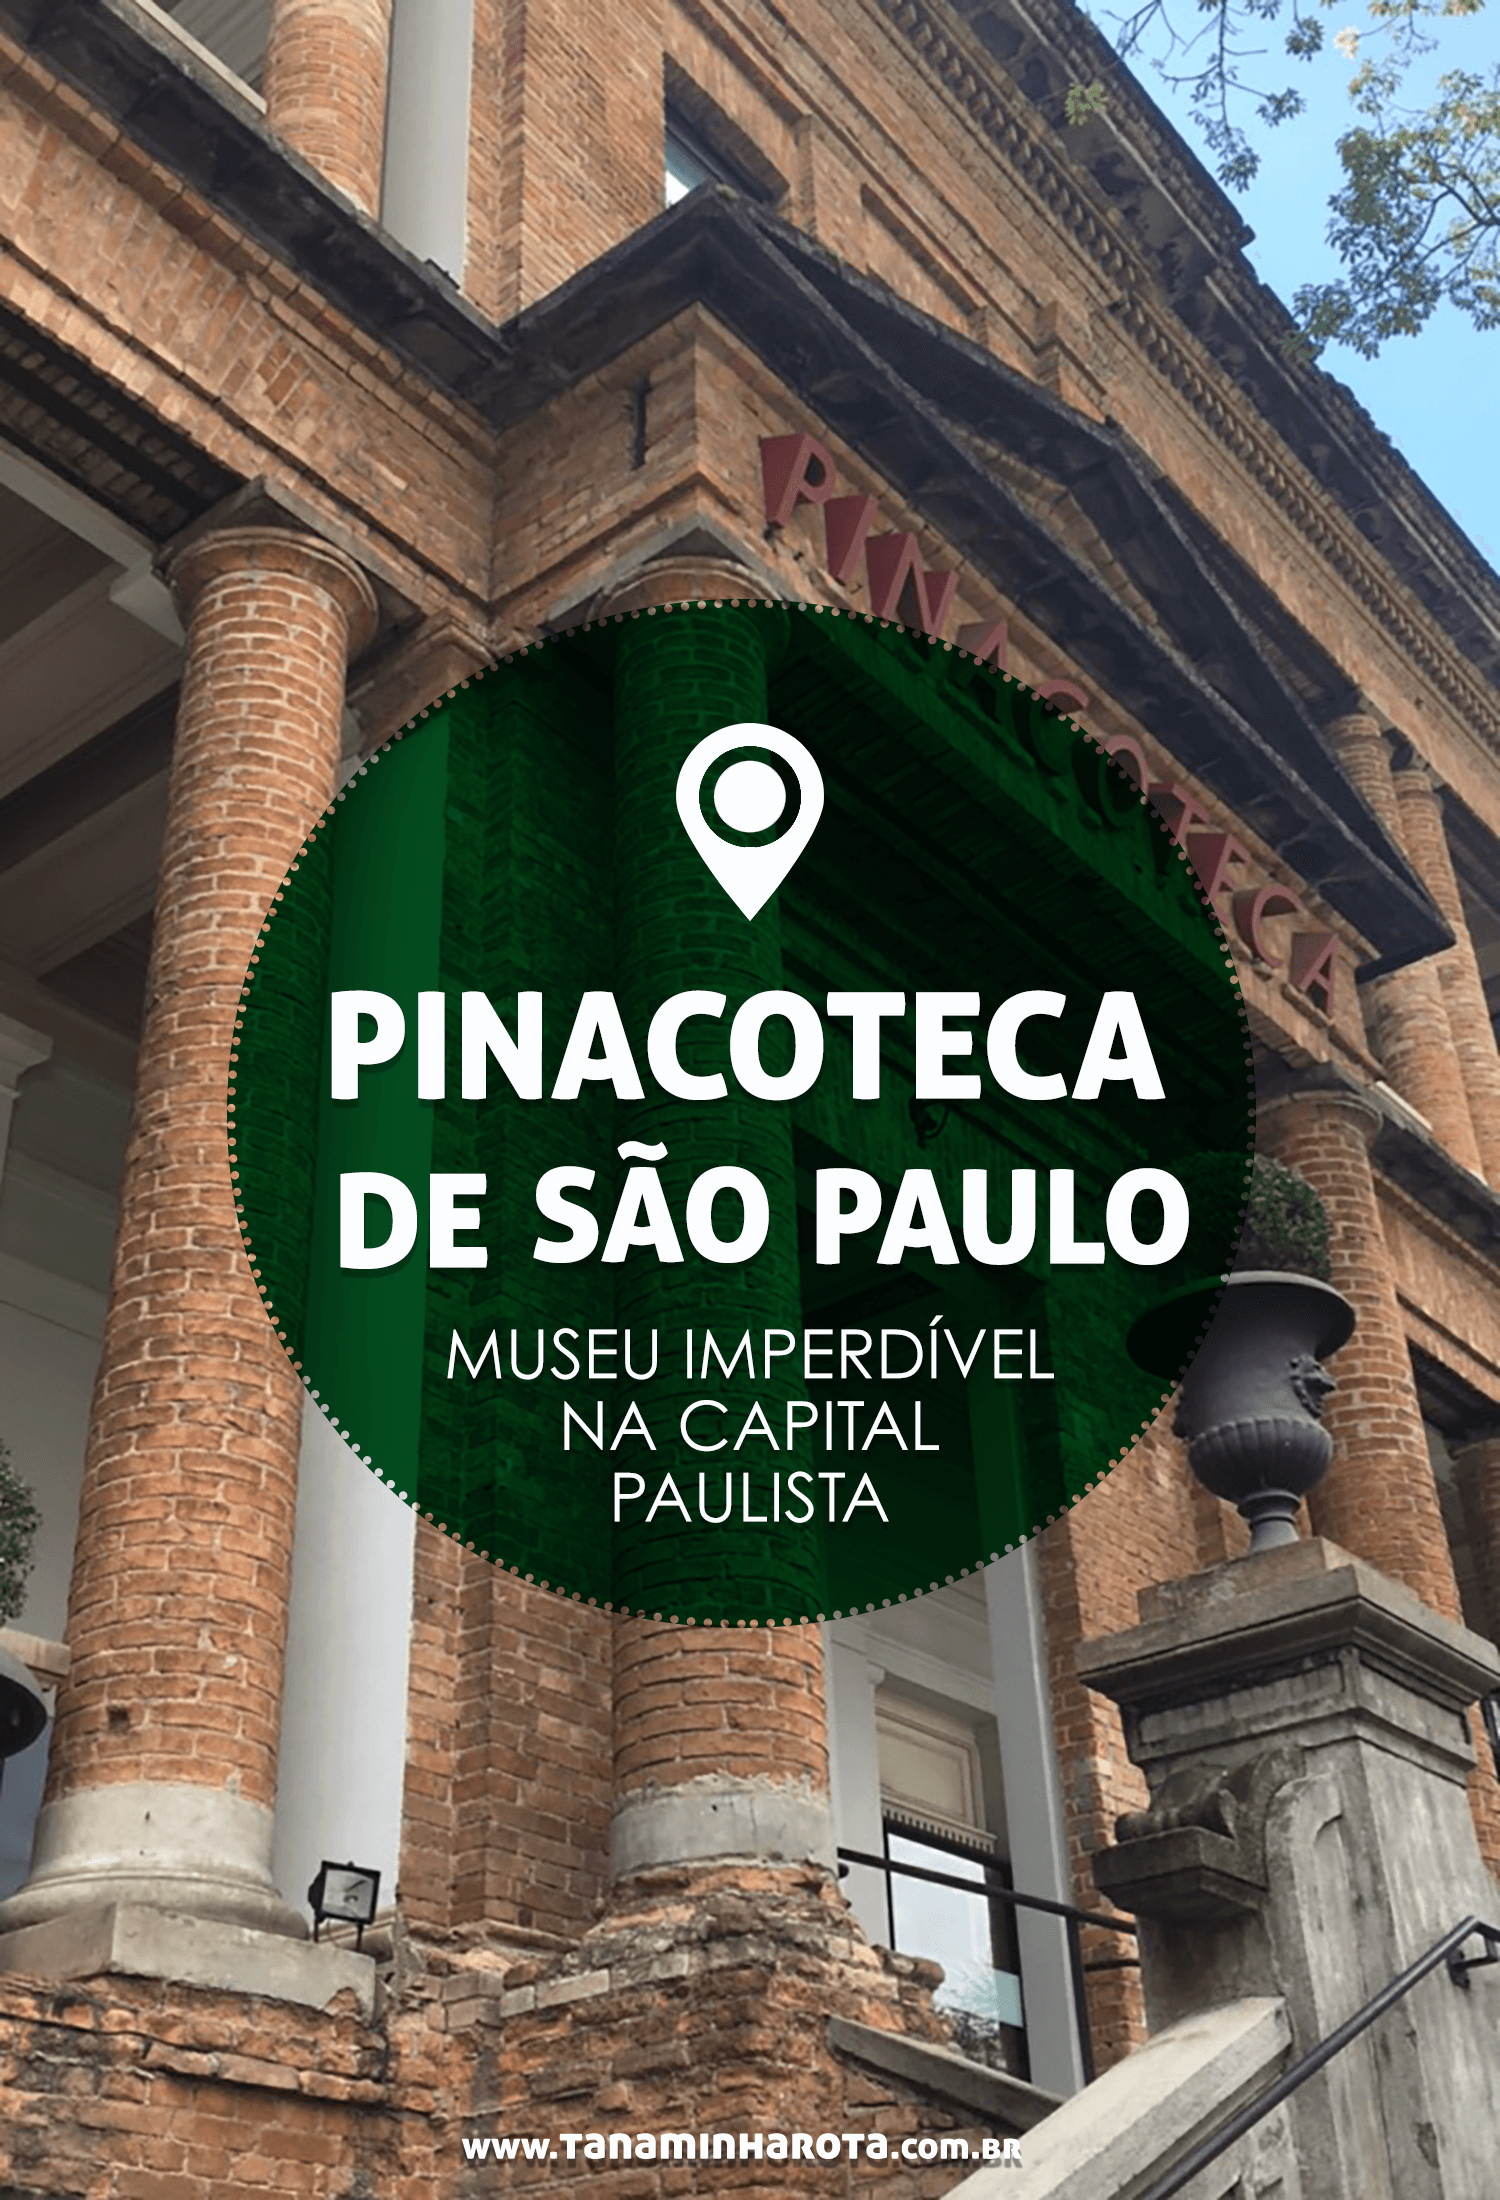 Leia mais sobre a Pinacoteca de São Paulo, um dos museus imperdíveis na capital paulista! #saopaulo #museus #brasil #viagem #cultura